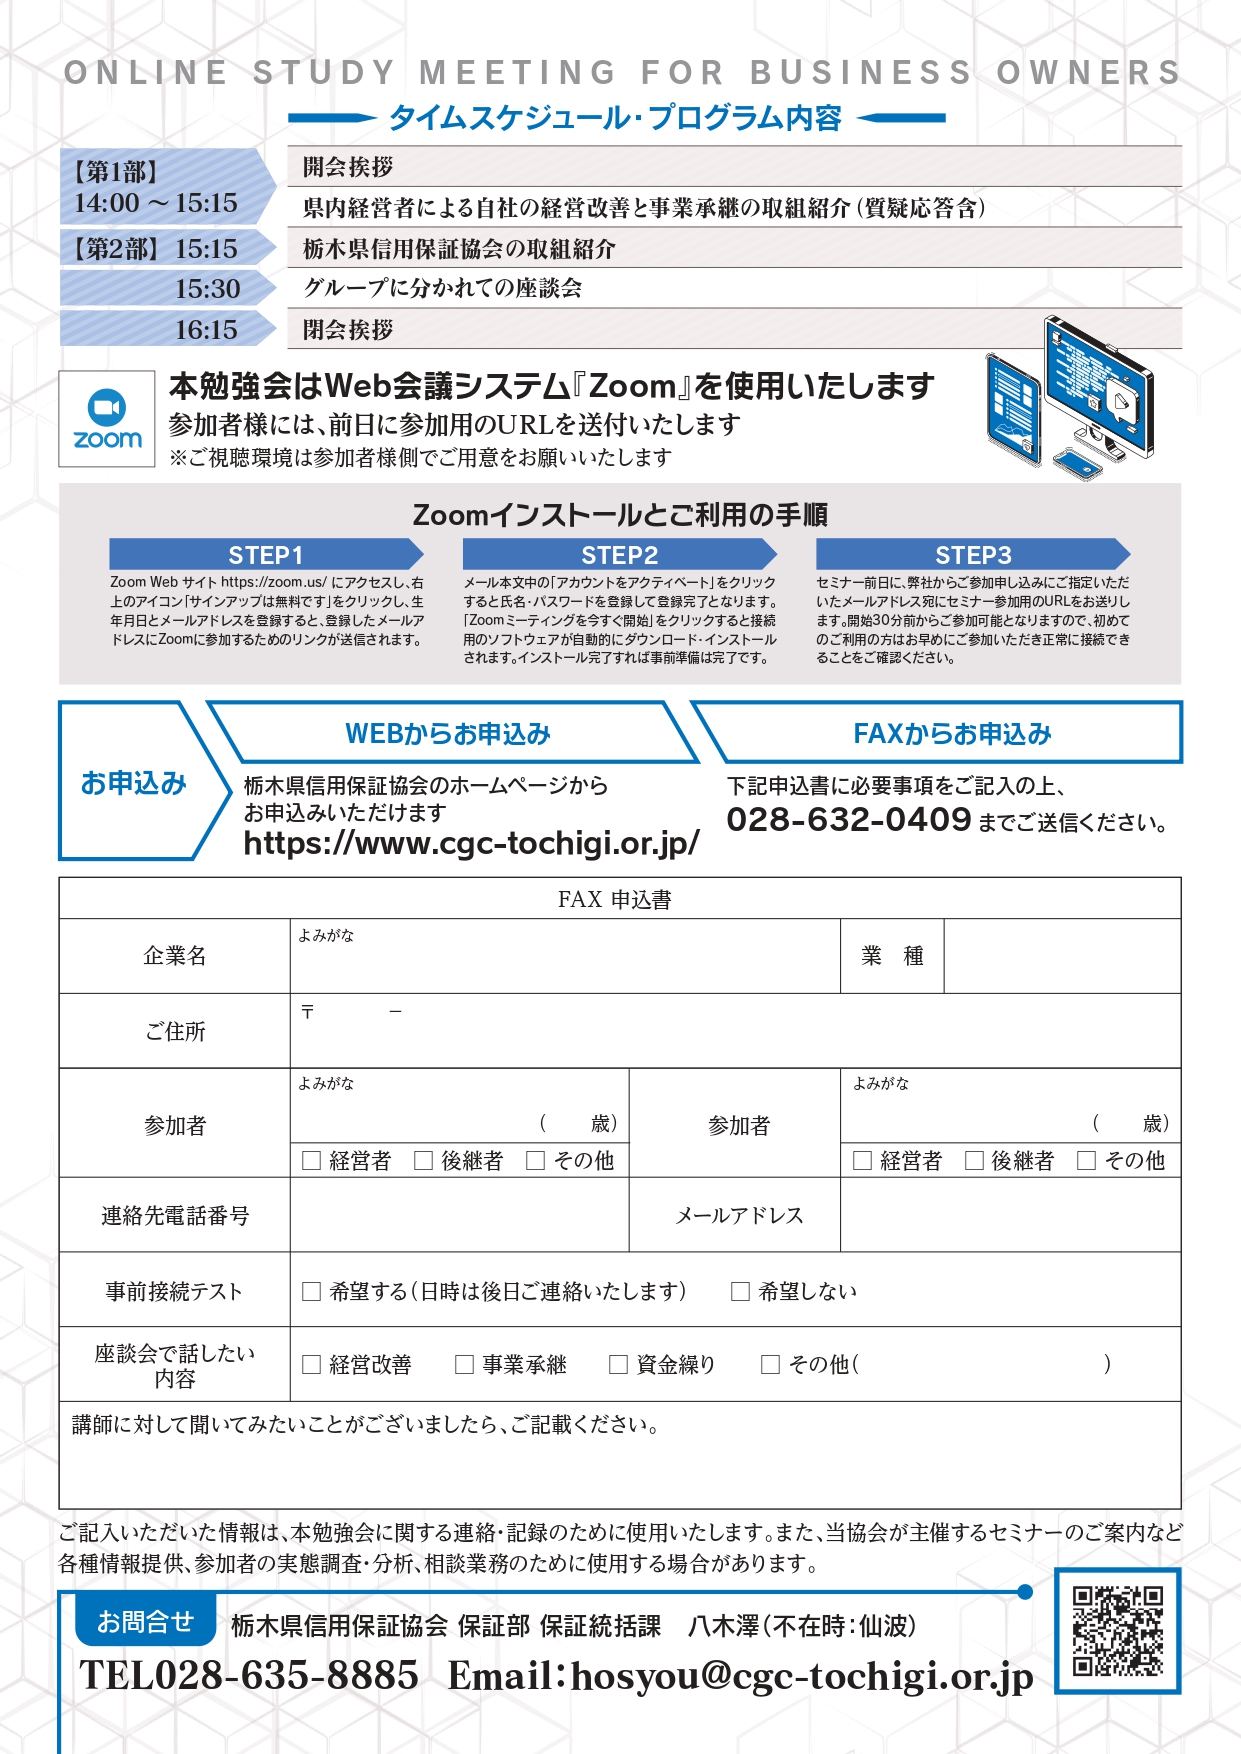 栃木県信用保証協会が主催する経営者・後継者のためのオンライン勉強会